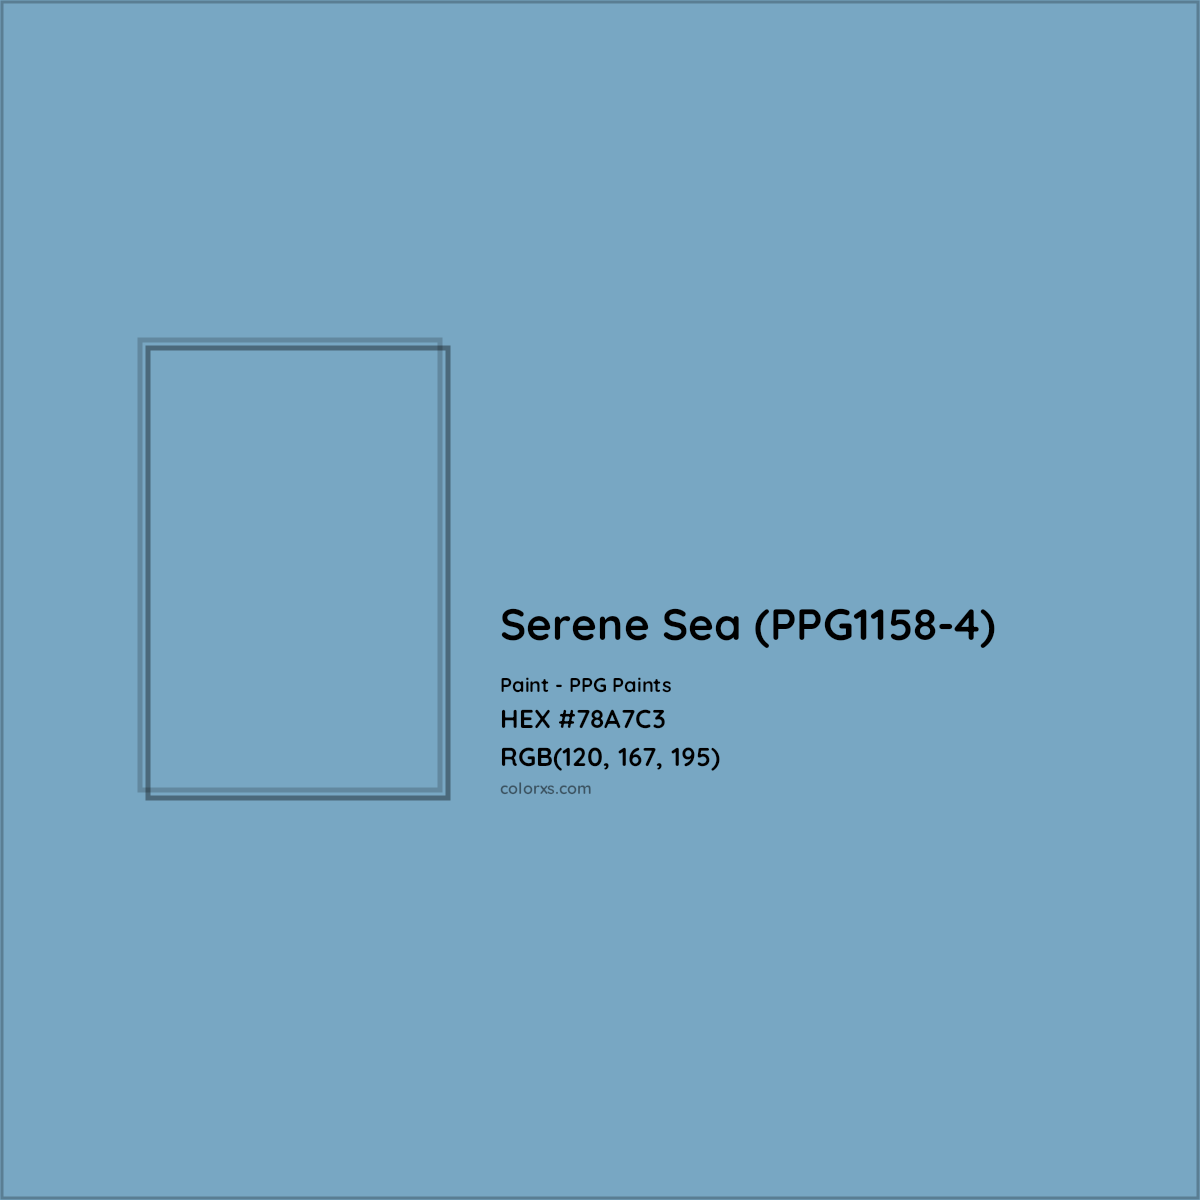 HEX #78A7C3 Serene Sea (PPG1158-4) Paint PPG Paints - Color Code